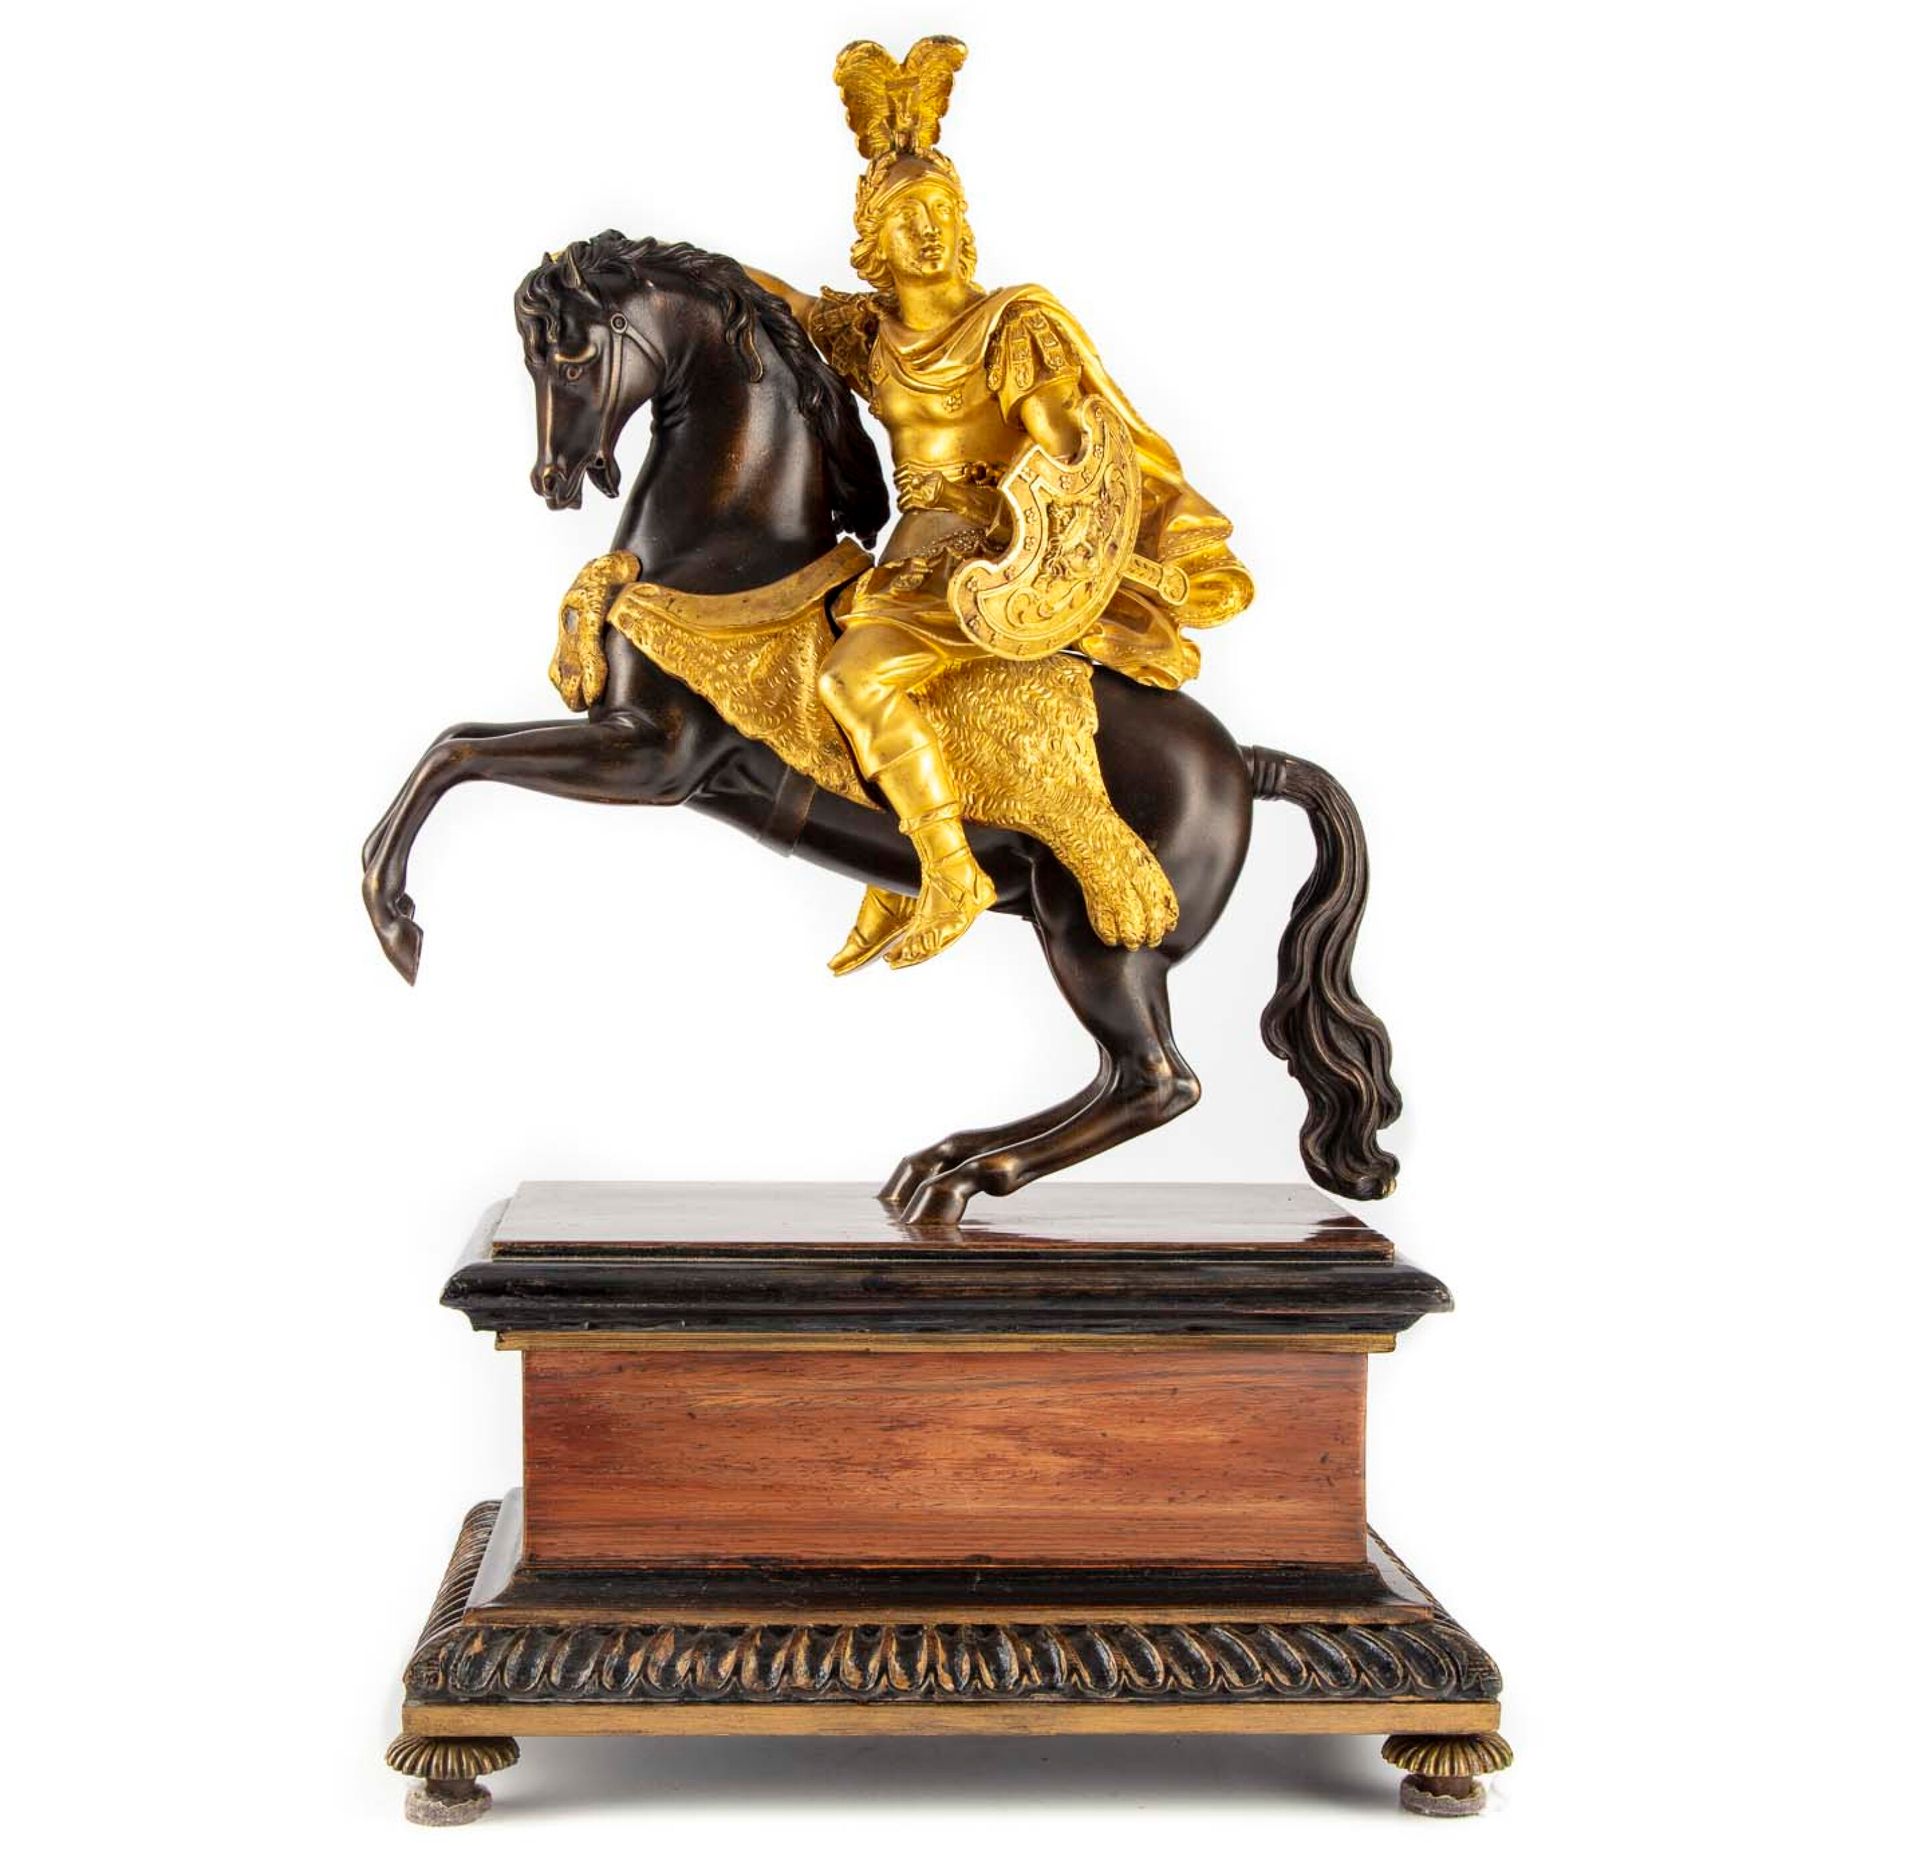 Null 带有两种铜锈的青铜雕像，表现了一个穿着古董风格的骑士，放在一个长方形的木皮底座上。

19世纪

H.47 cm; L. : 30 cm